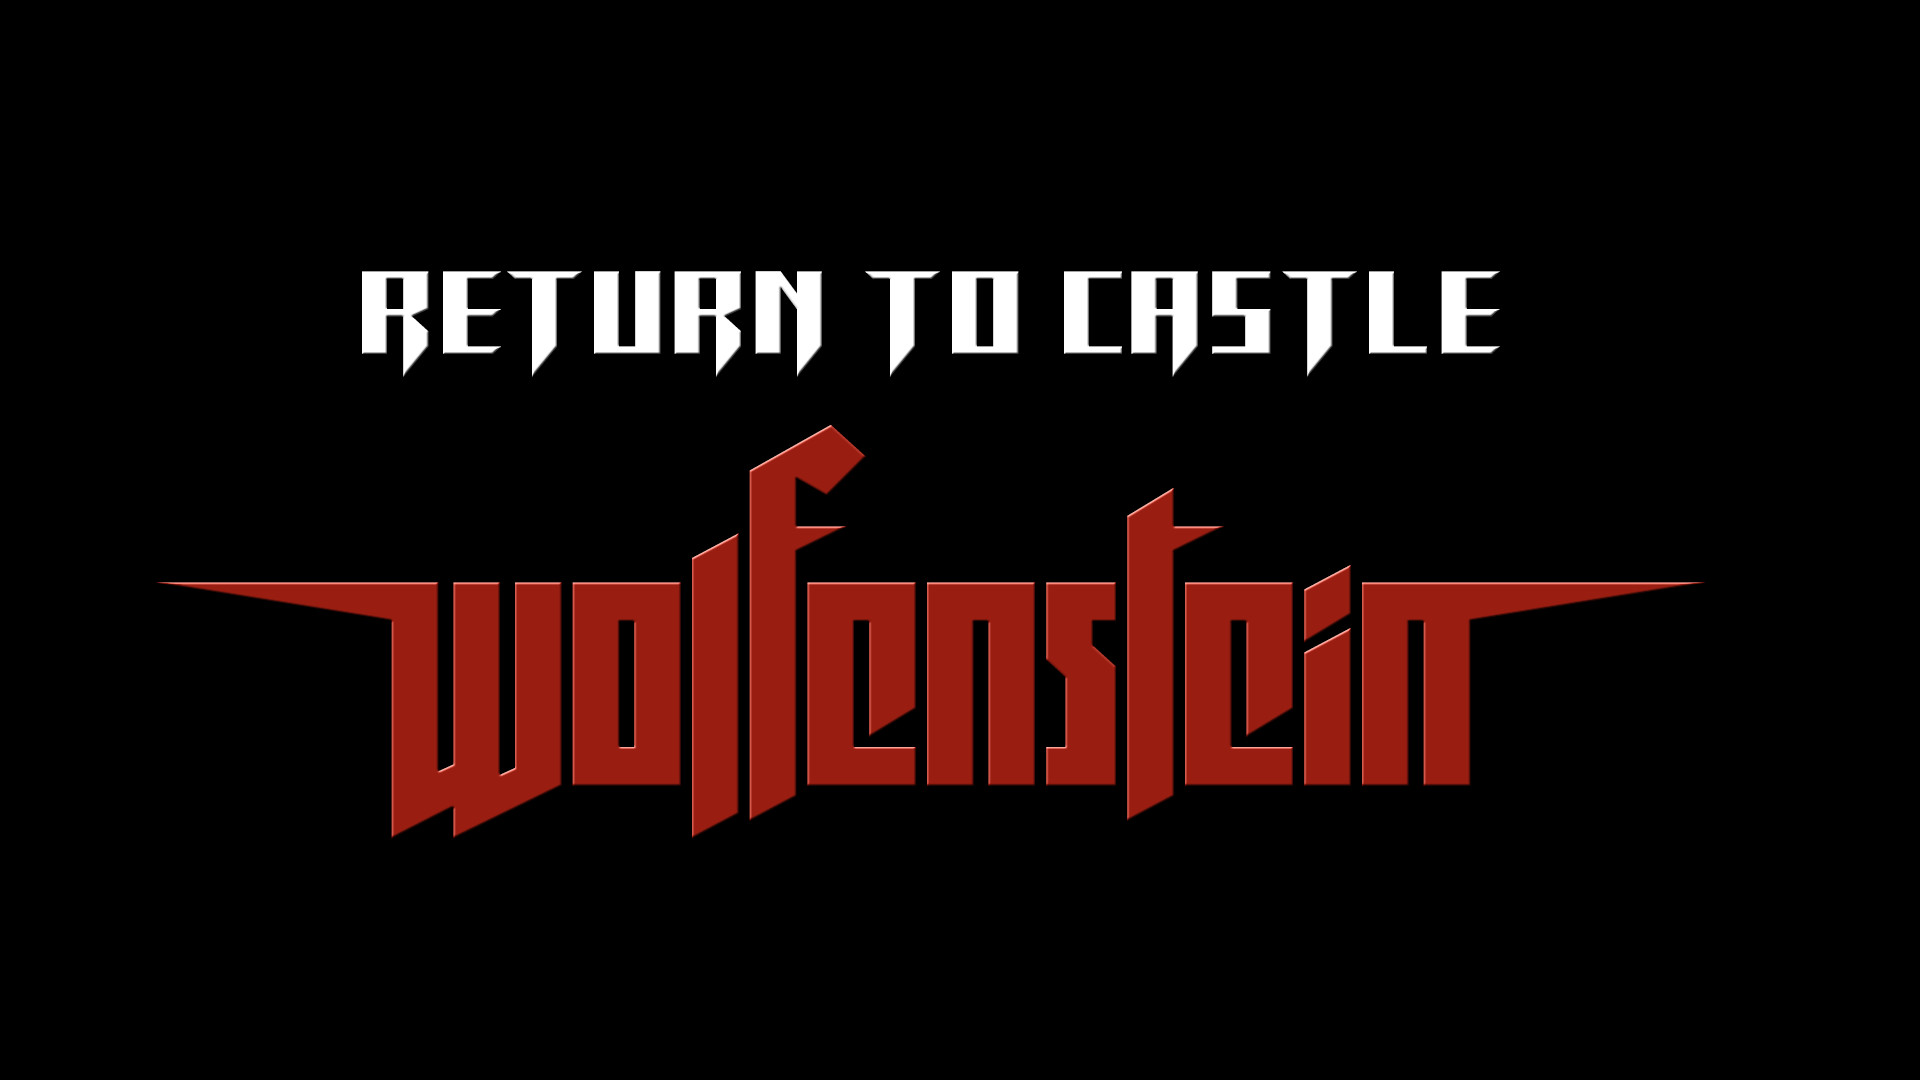 return to castle wolfenstein hd graphics mod